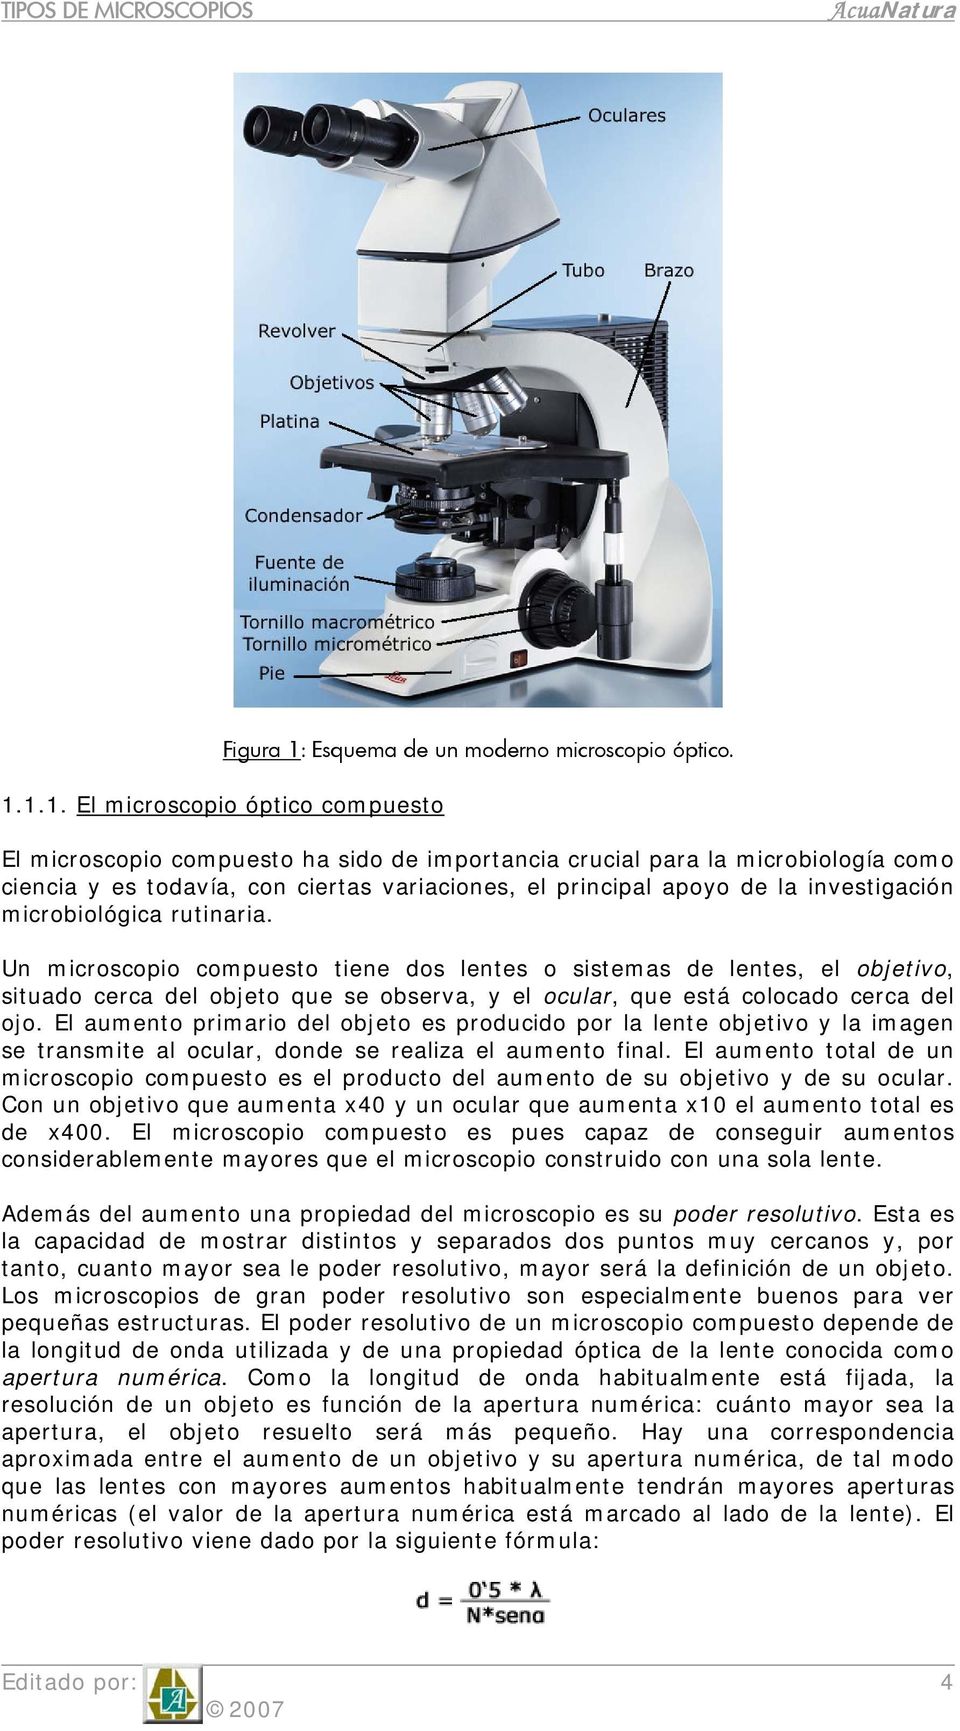 1.1. El microscopio óptico compuesto El microscopio compuesto ha sido de importancia crucial para la microbiología como ciencia y es todavía, con ciertas variaciones, el principal apoyo de la